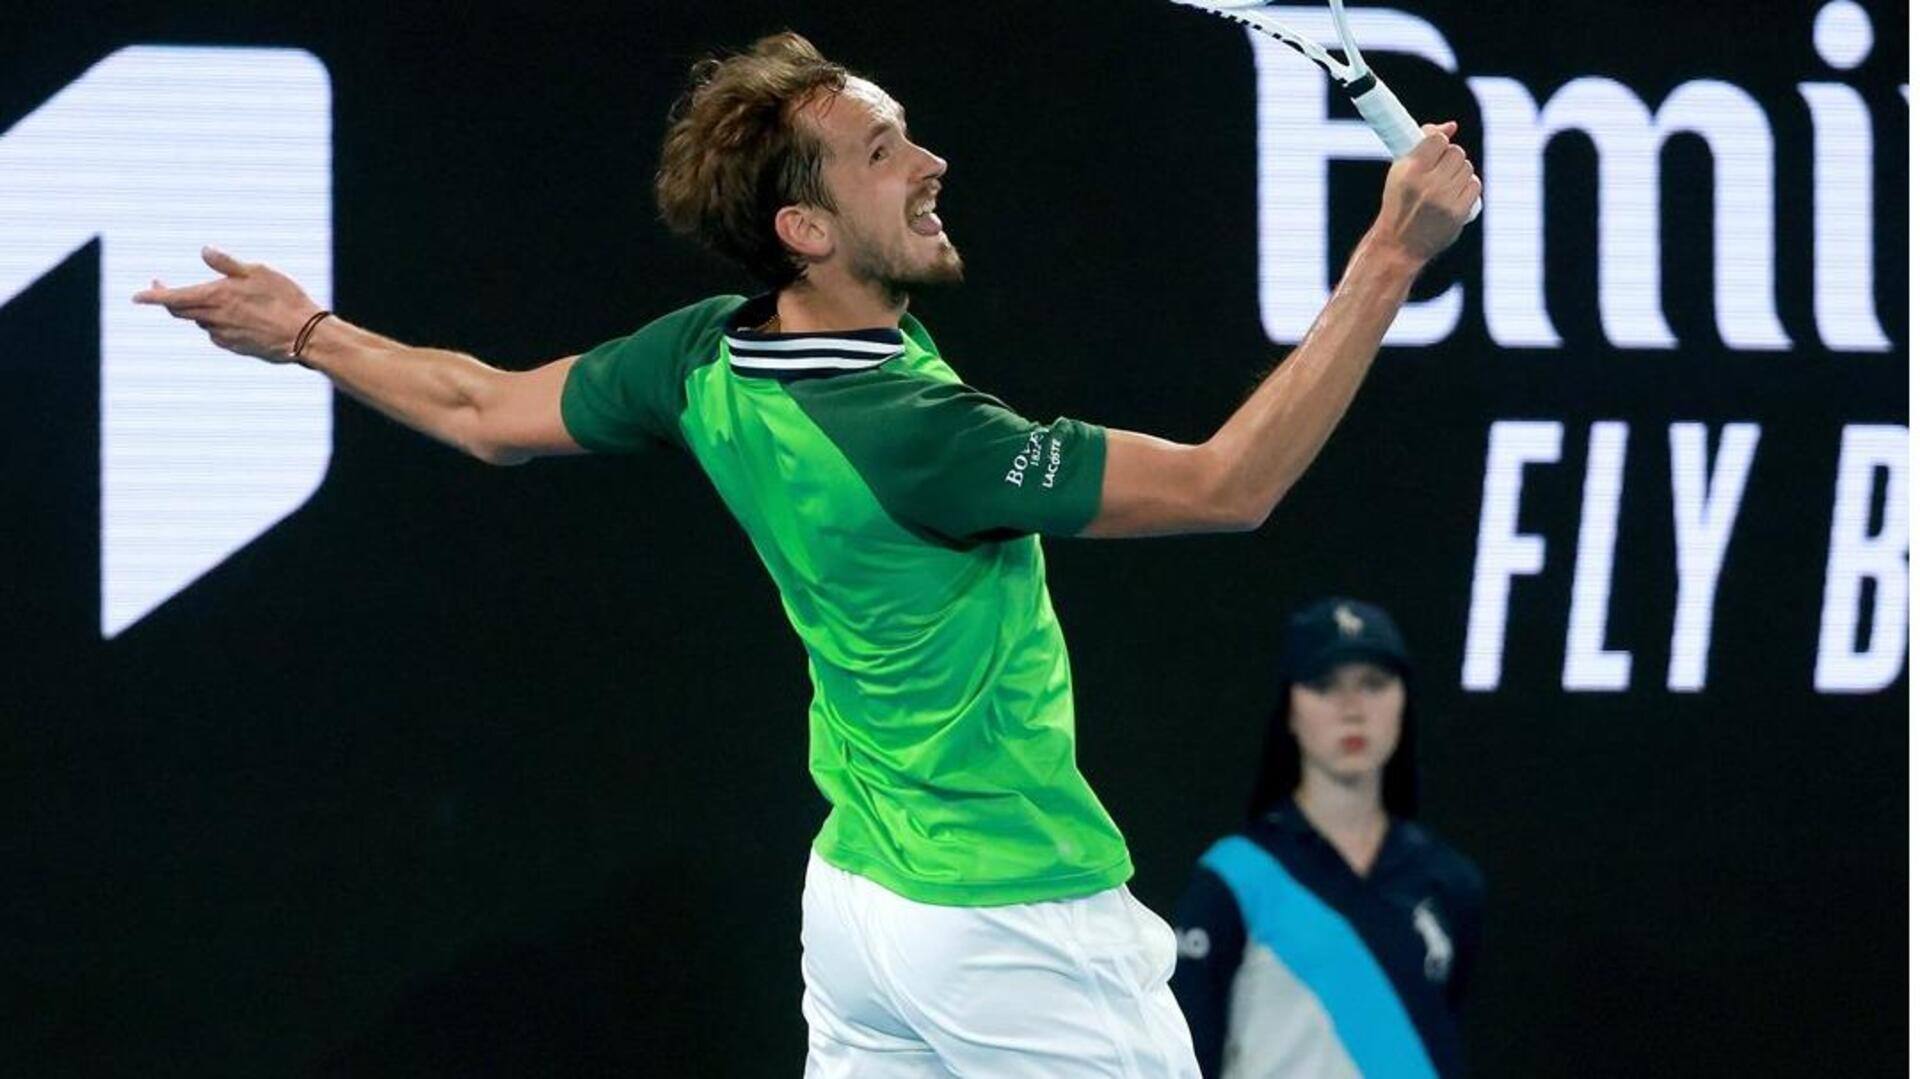 Australian Open: Daniil Medvedev wins five-set thriller, reaches third round